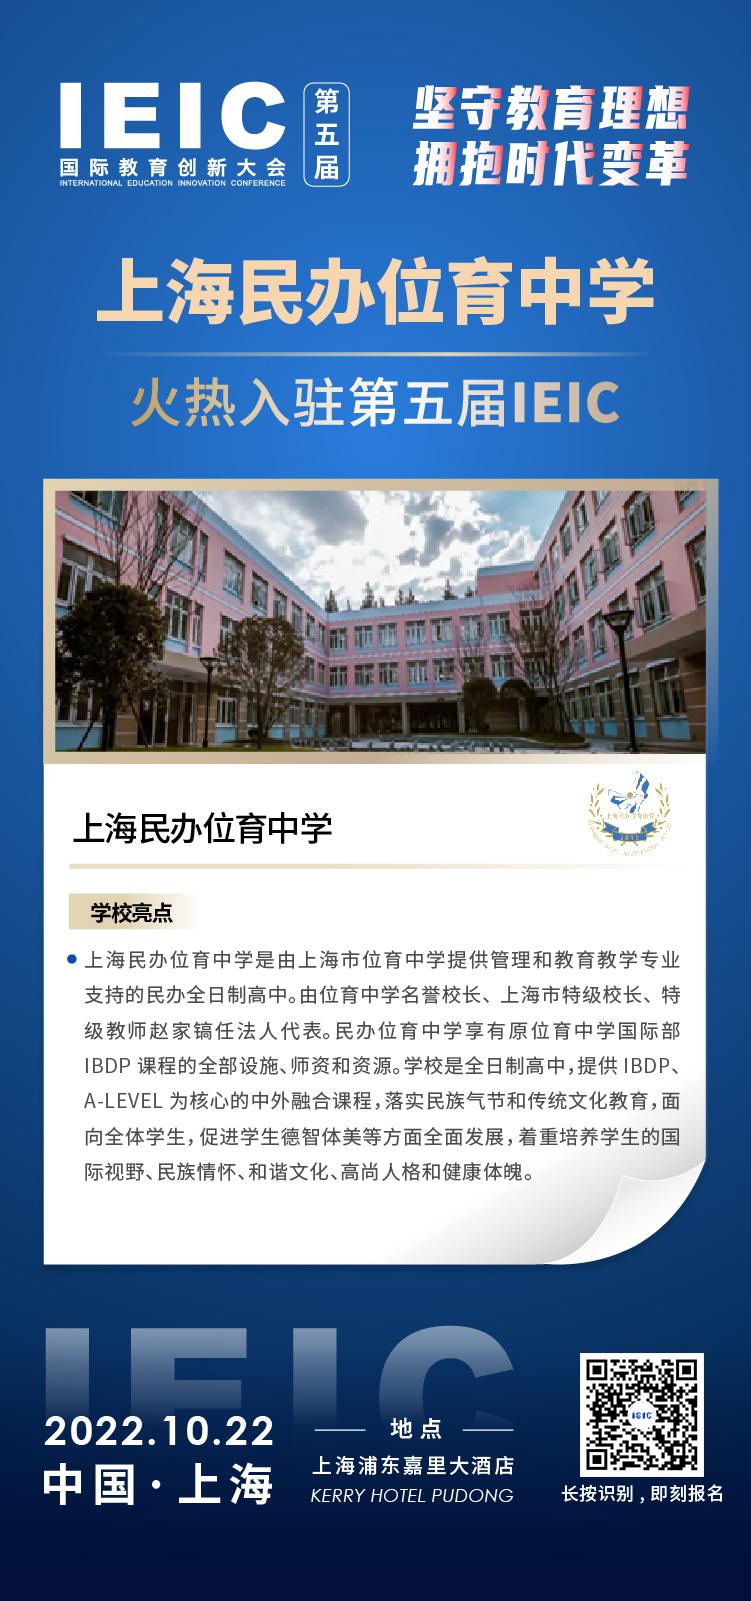 上海民办位育中学成功入驻参加2022年远播第五届IEIC国际教育创新大会